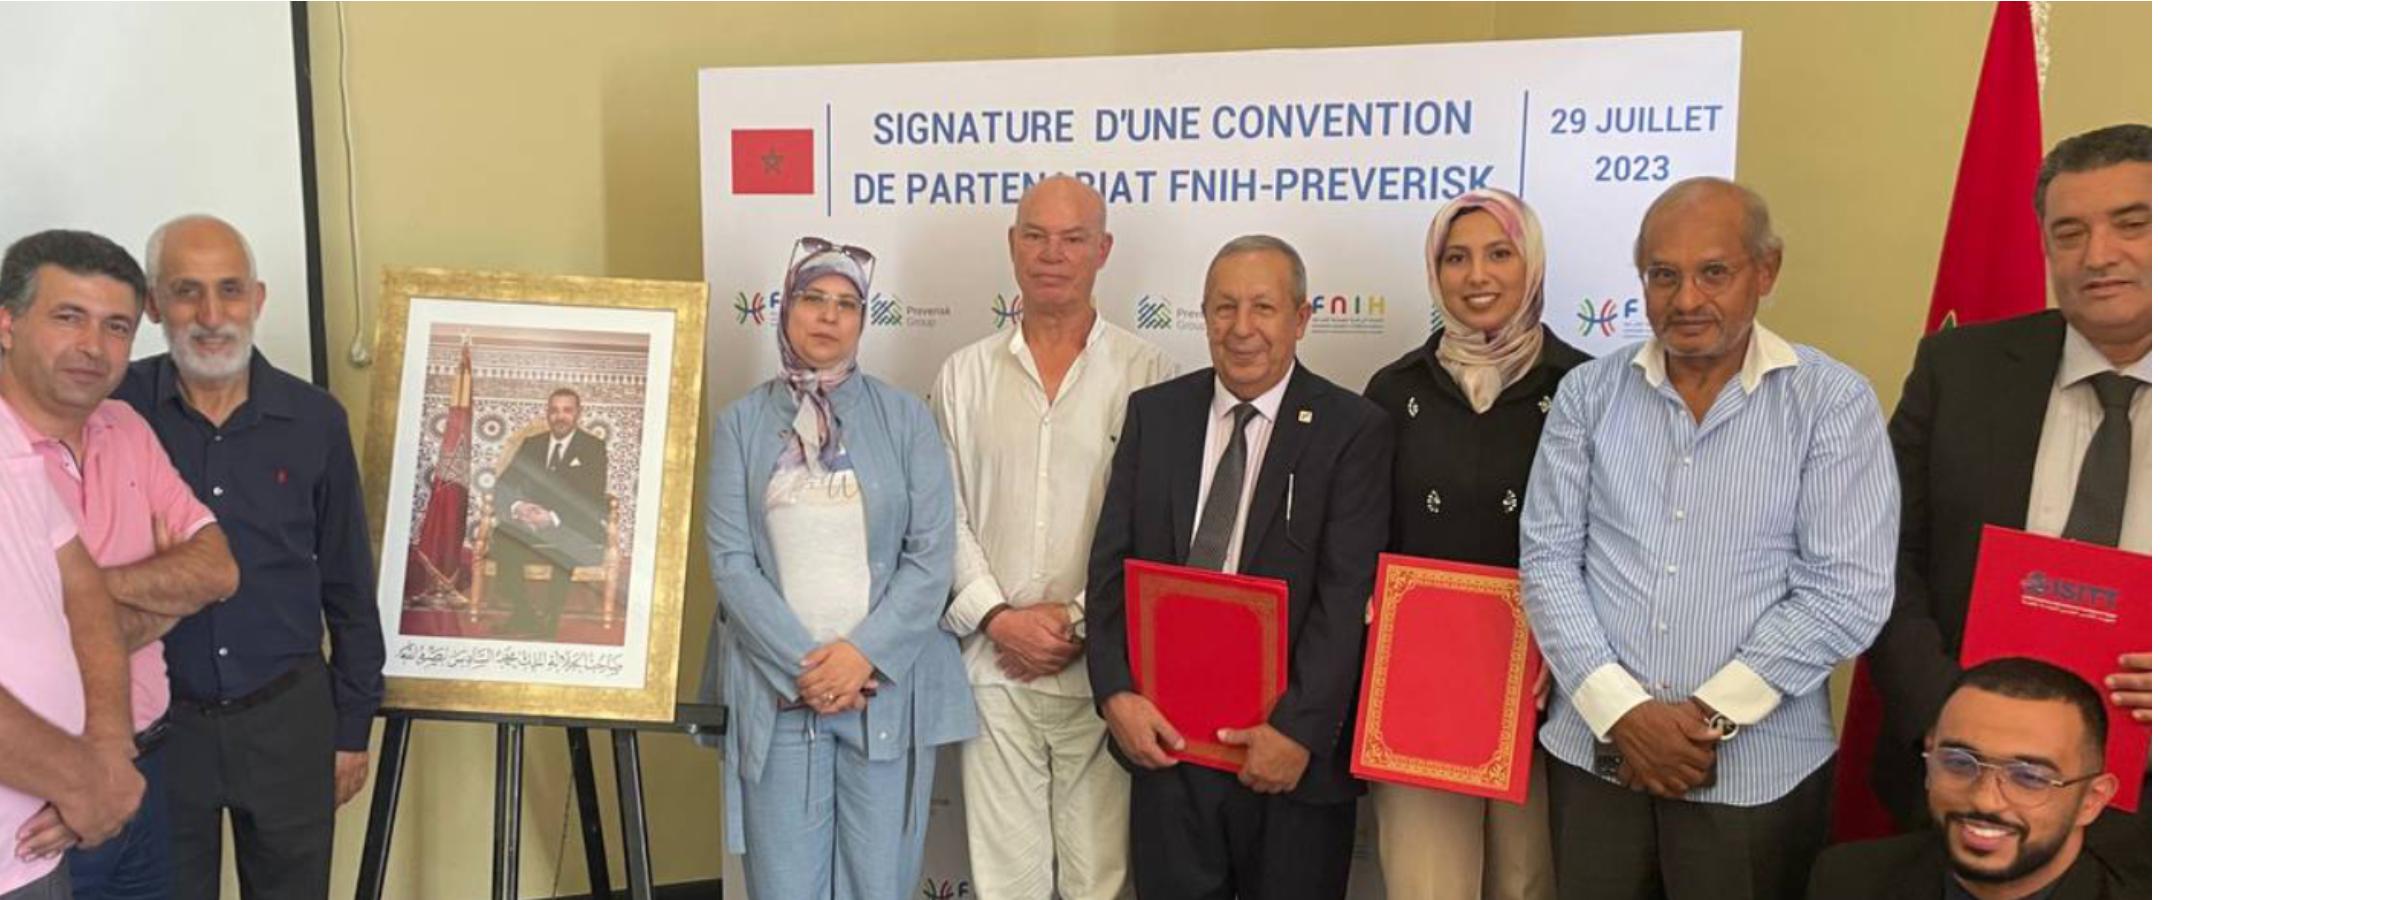 Img. principal: Preverisk et la FNIH s'associent pour renforcer la qualité et la sécurité dans l'industrie hôtelière marocaine.